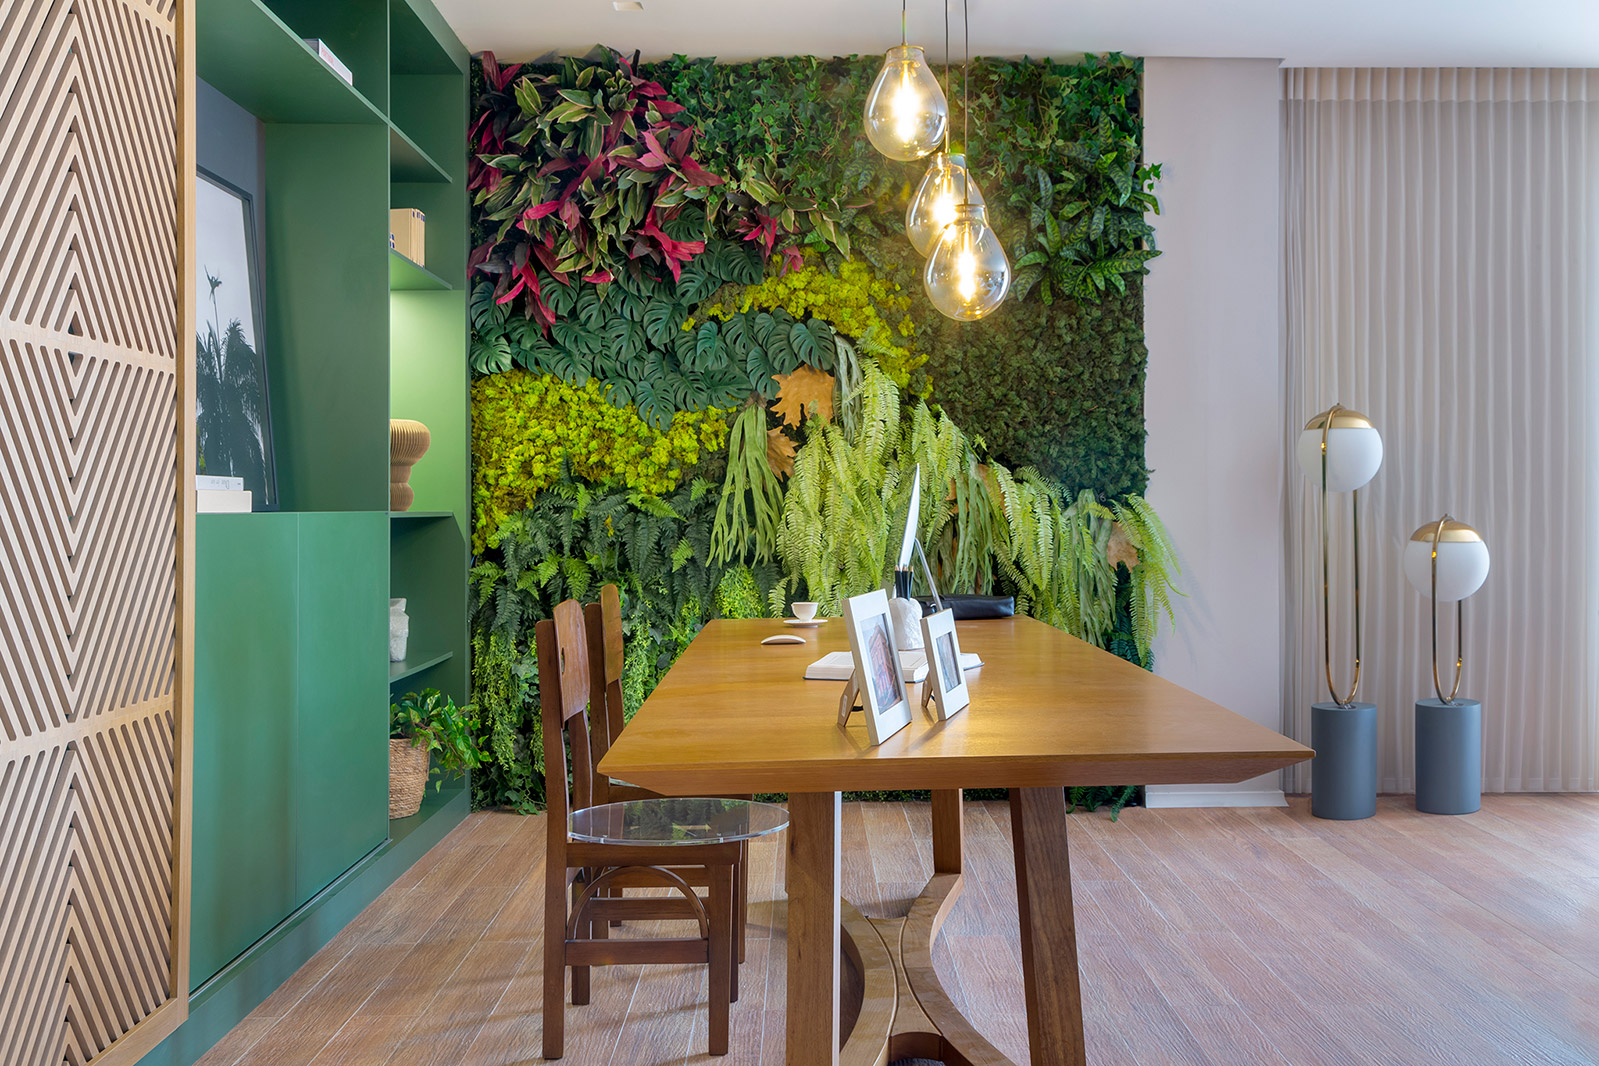 valentina craboledda casa cor goias 2021 home office essenziale escritorio varanda jardim vertical decoração